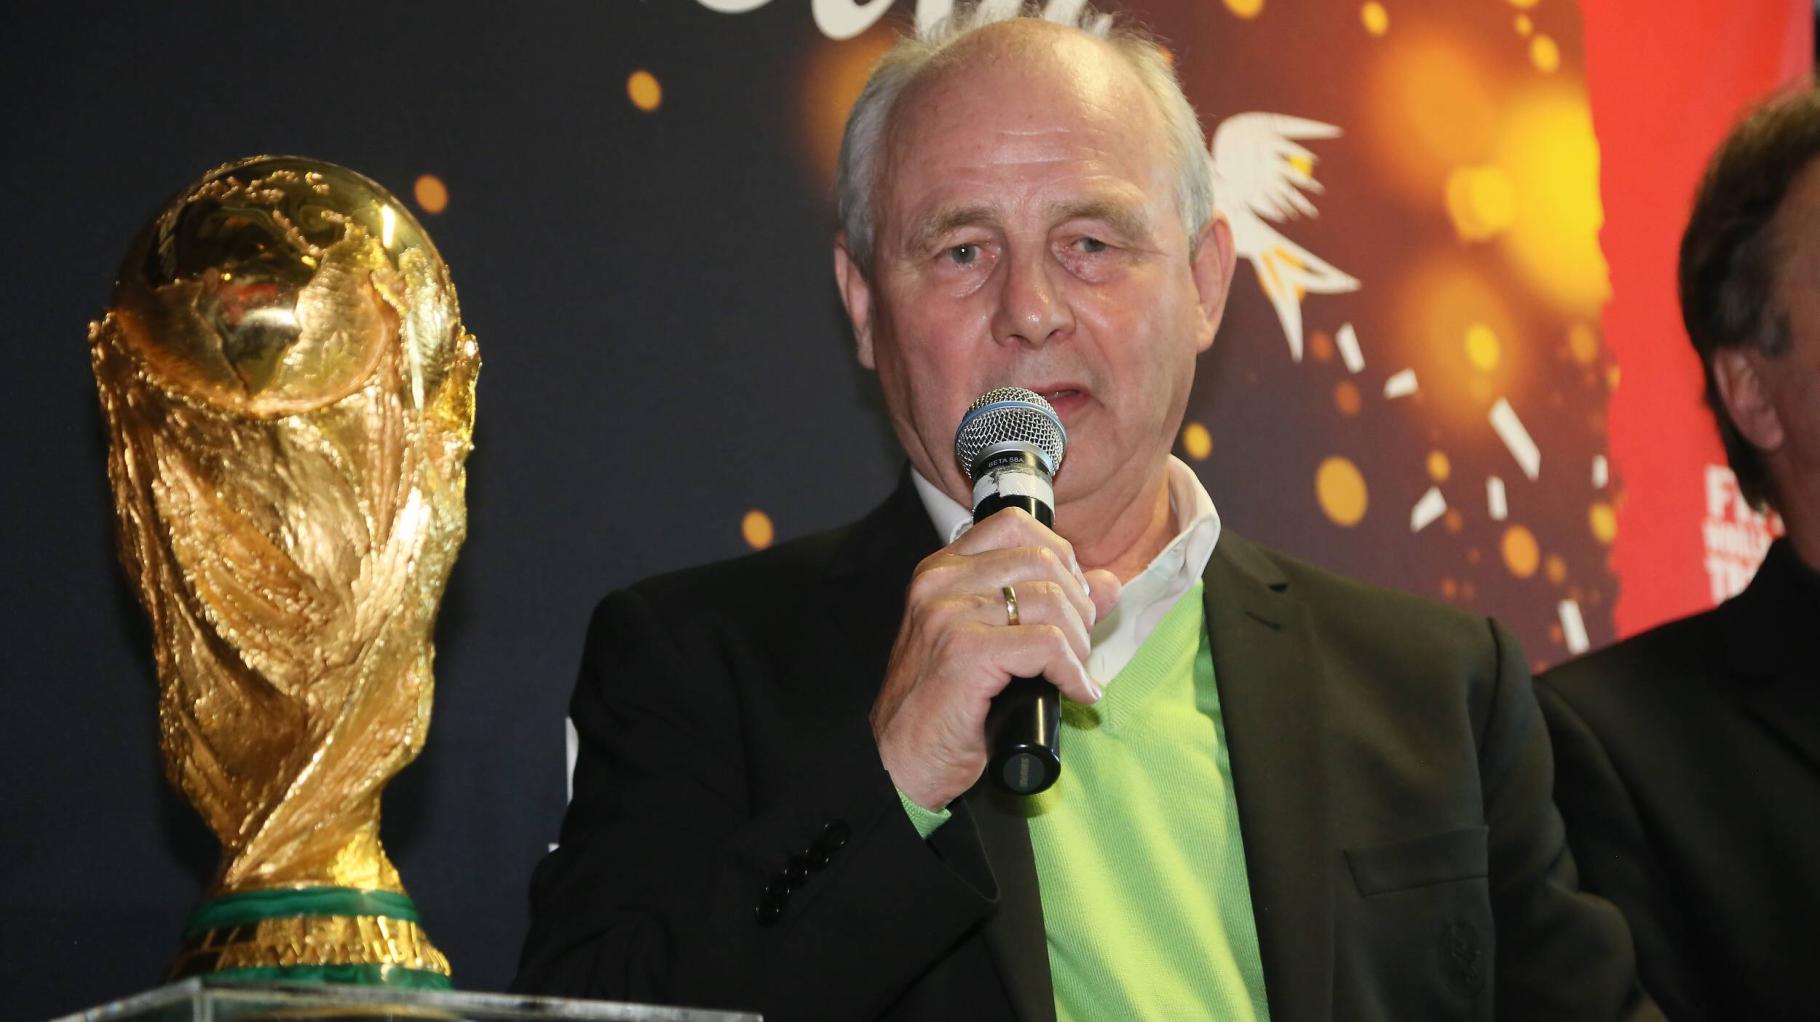 Fußball-Weltmeister von 1974: Bernd Hölzenbein im Alter von 78 Jahren gestorben